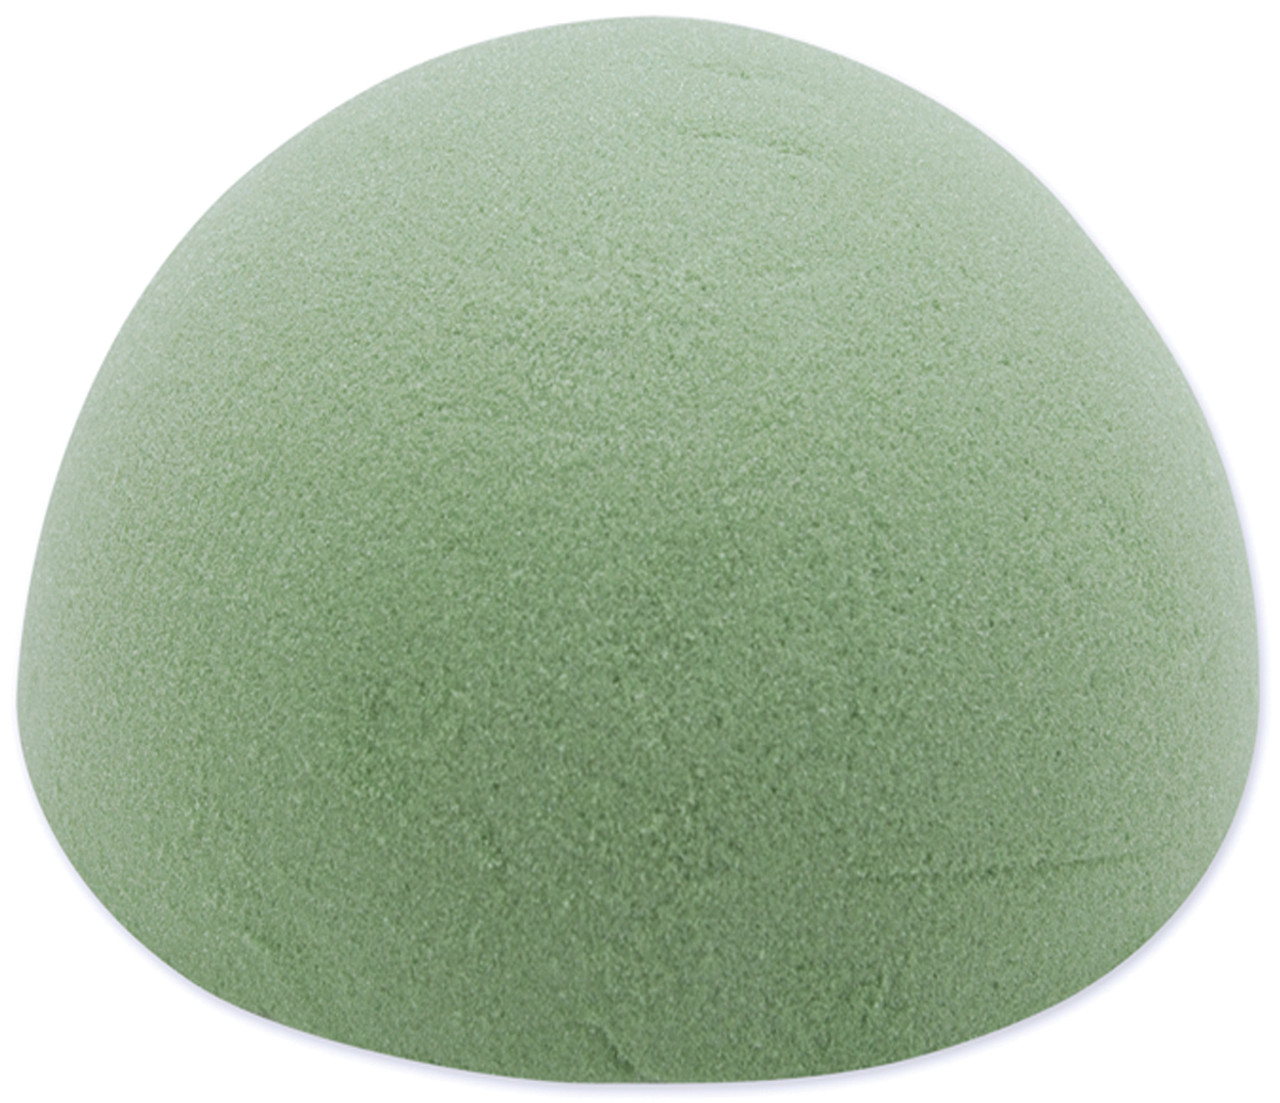 Floracraft Foam Ball 6 inch Green